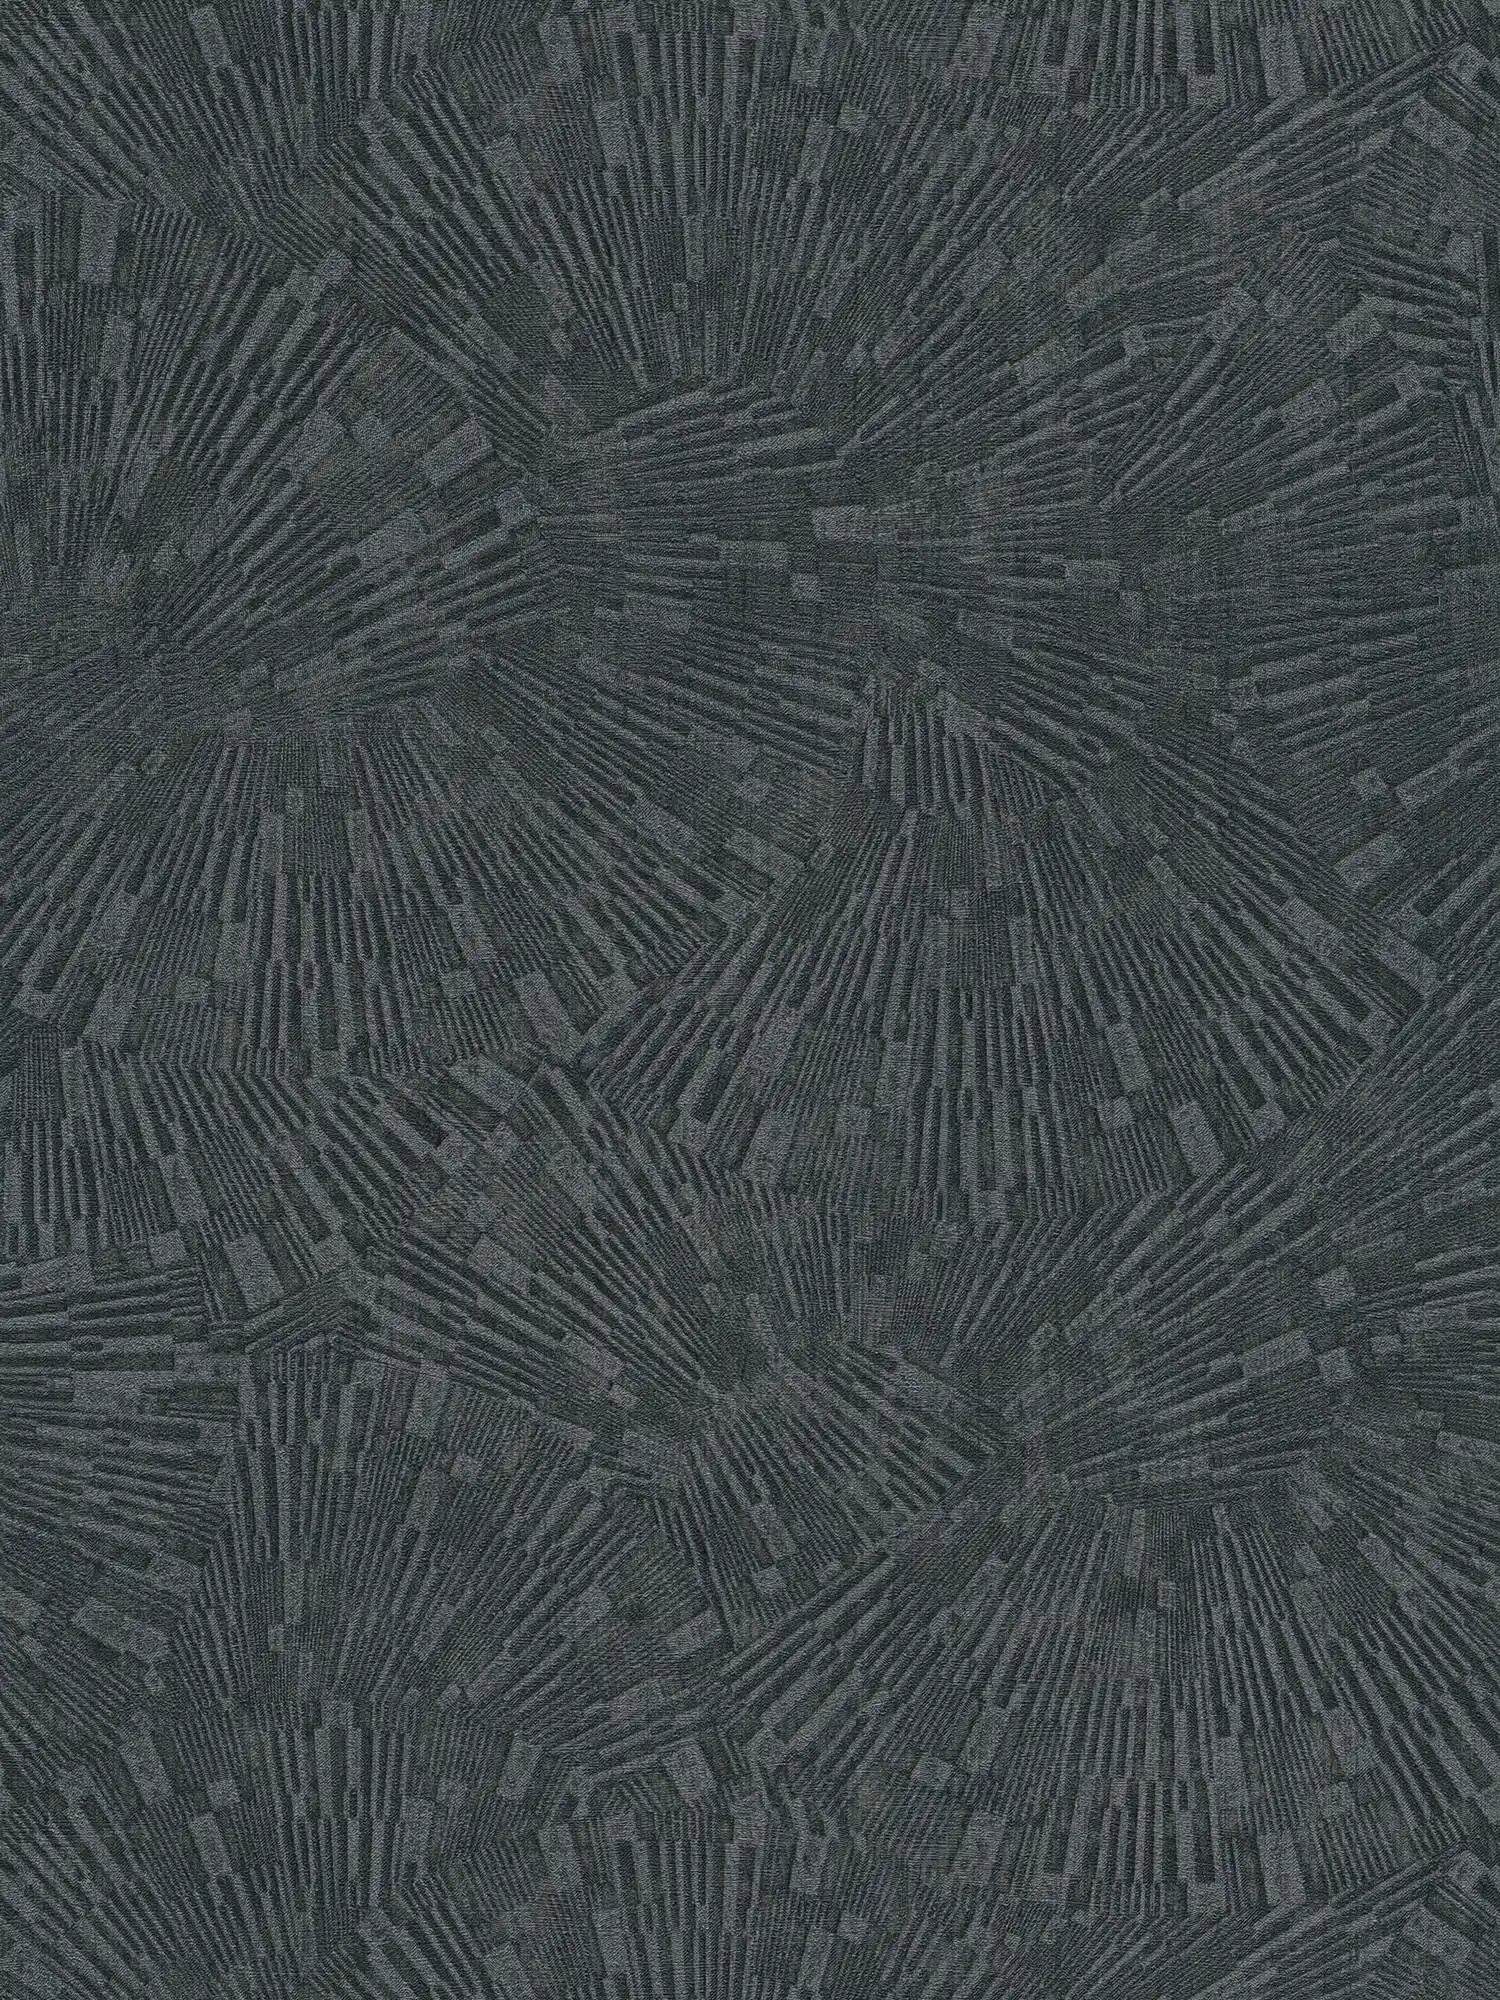         Schwarze Tapete glänzend mit Struktureffekt – Braun, Schwarz
    